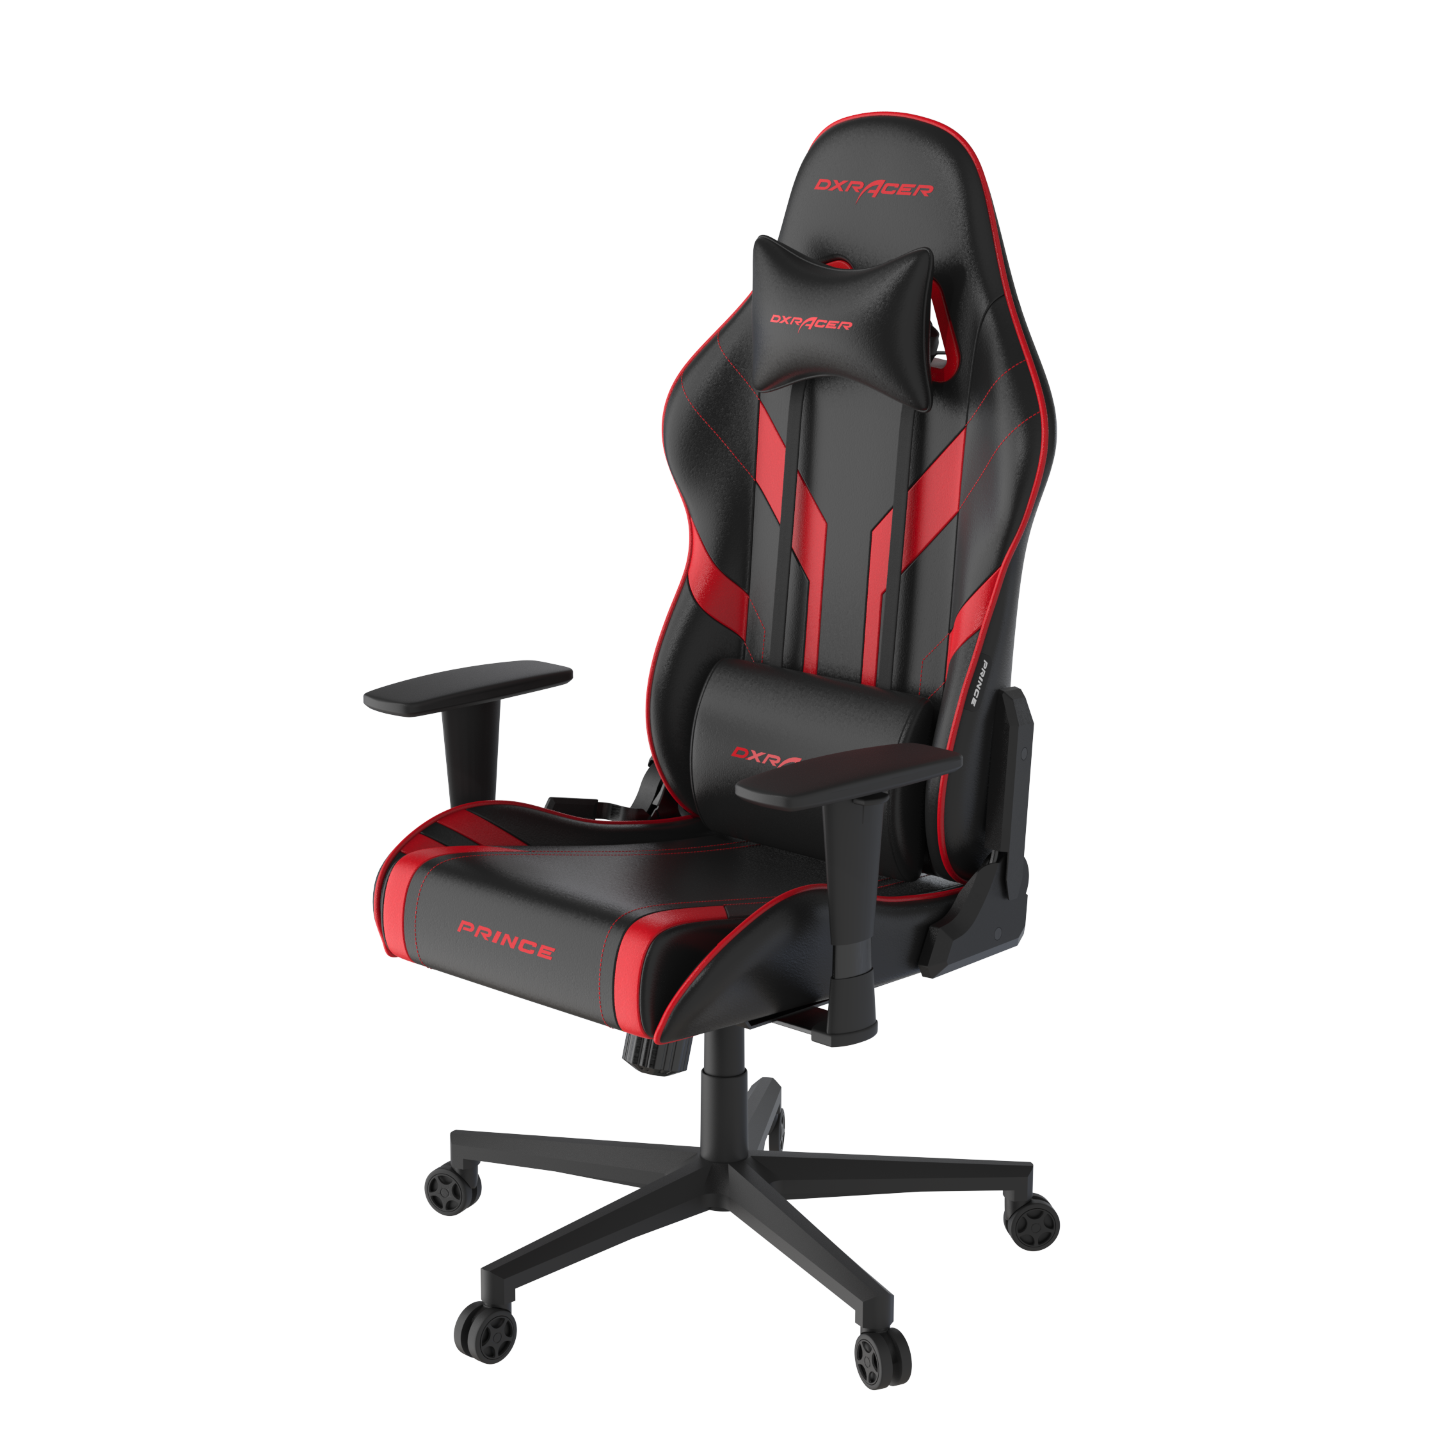 Кресло игровое DxRacer OH/P88/NR эко-кожа, черное с красными вставками, наклон спинки до 135 градусов, регулировка подлокотников 3 положения, механизм